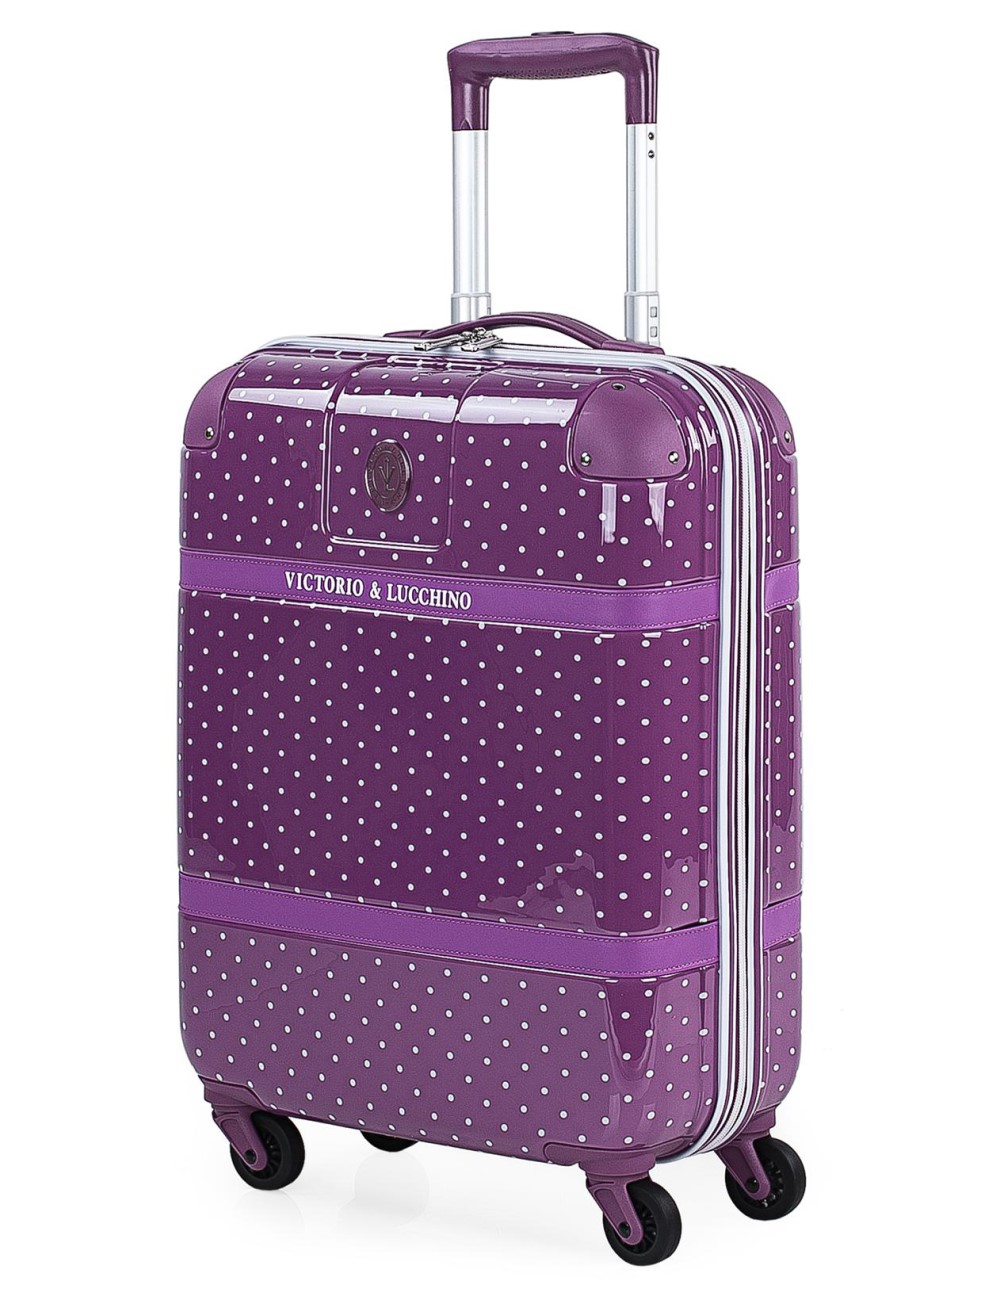 Encuentra tu maleta Victorio y Lucchino con diseños elegantes y detalles exquisitos